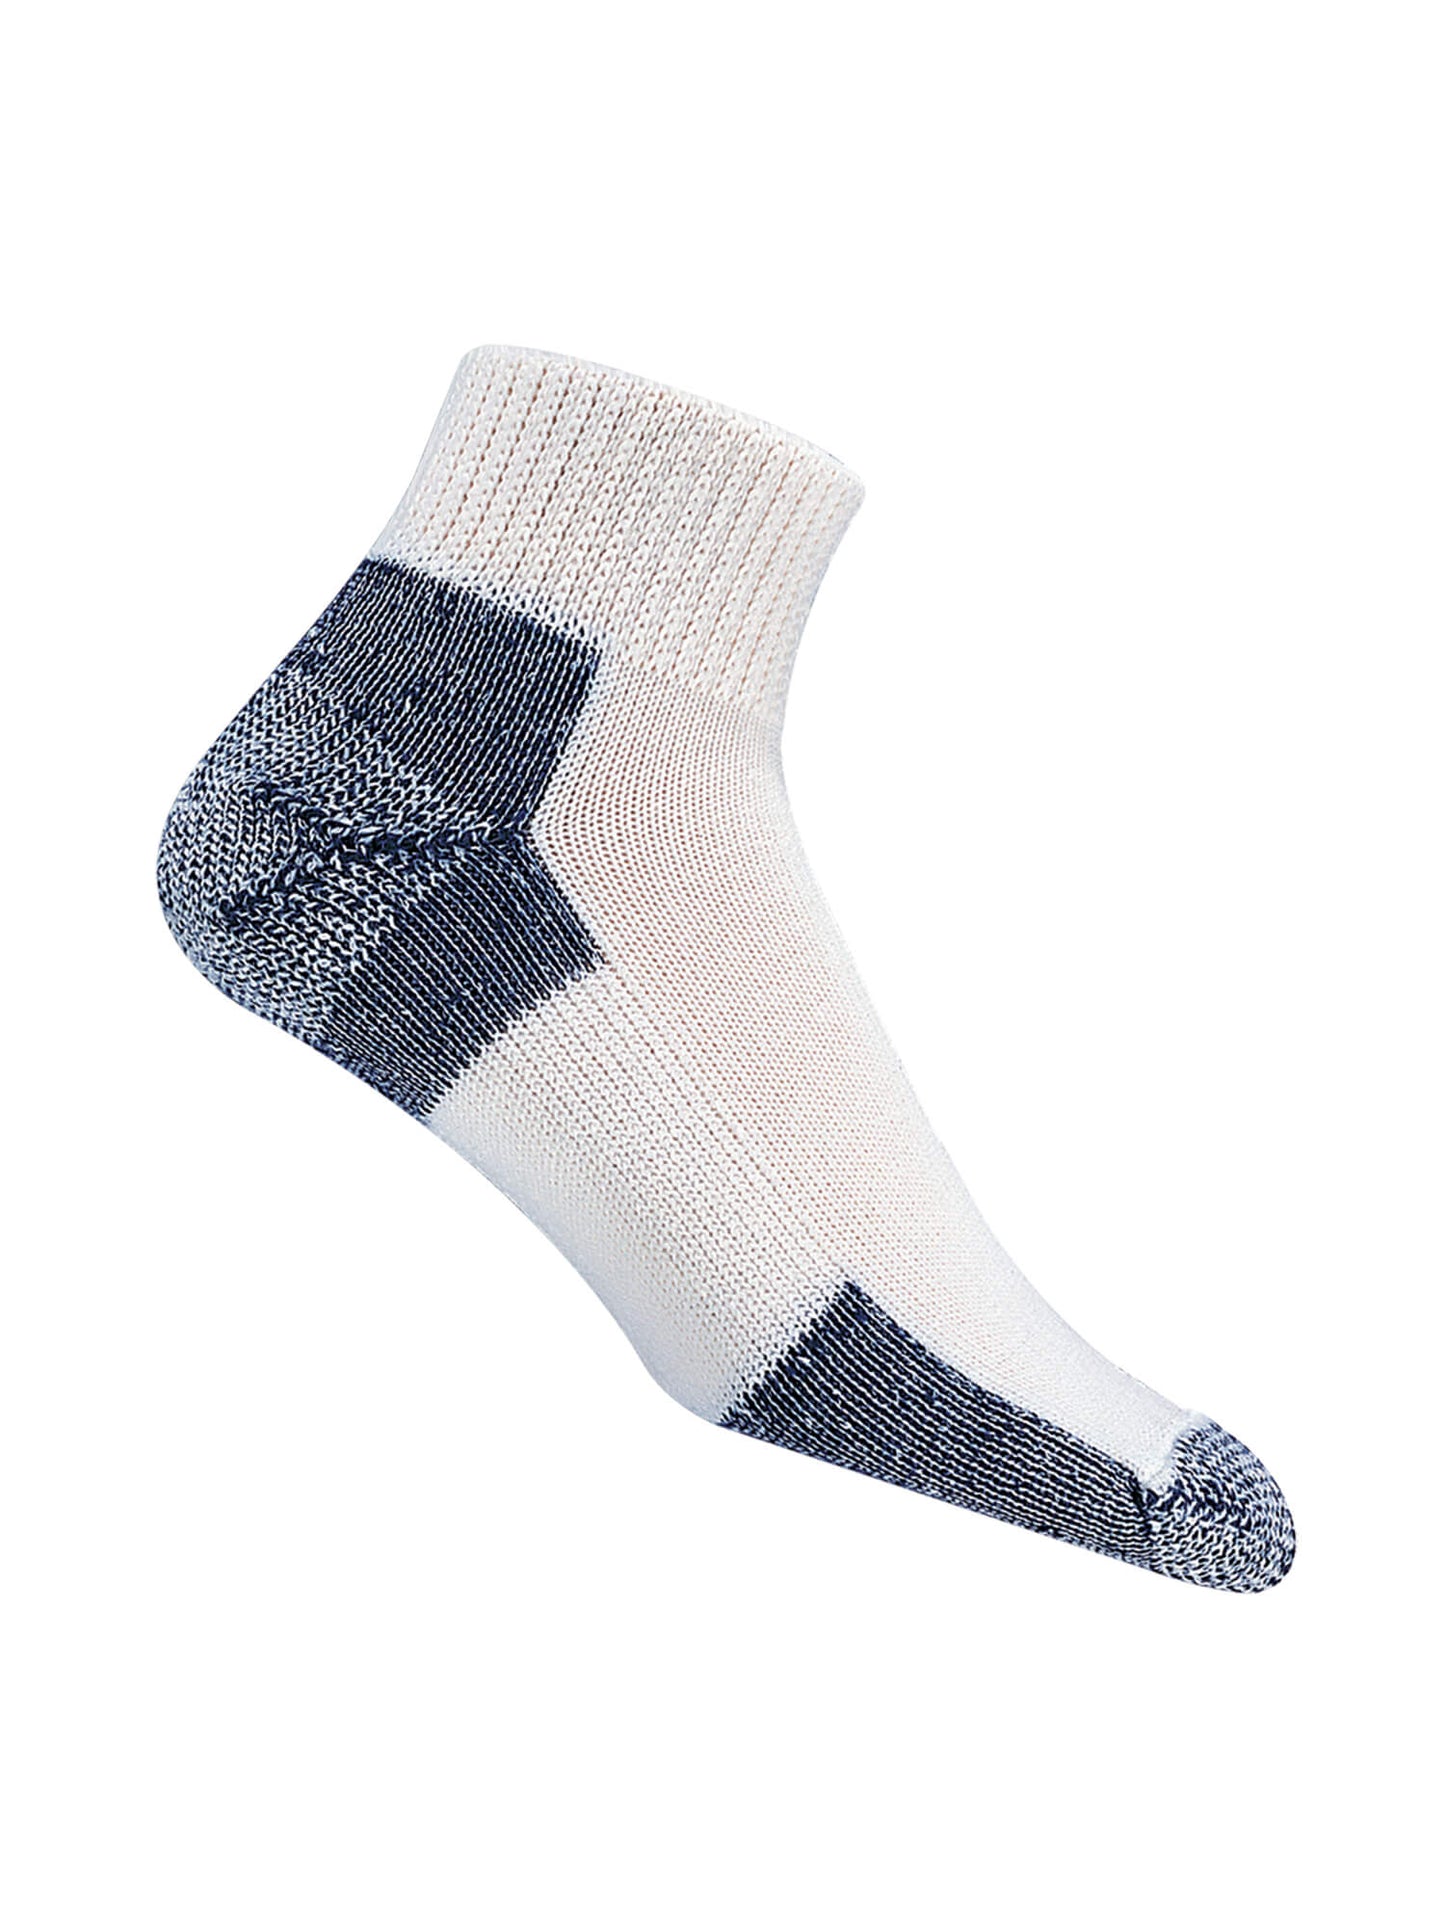 White and Grey Thorlos Running Maximum Cushion Socks